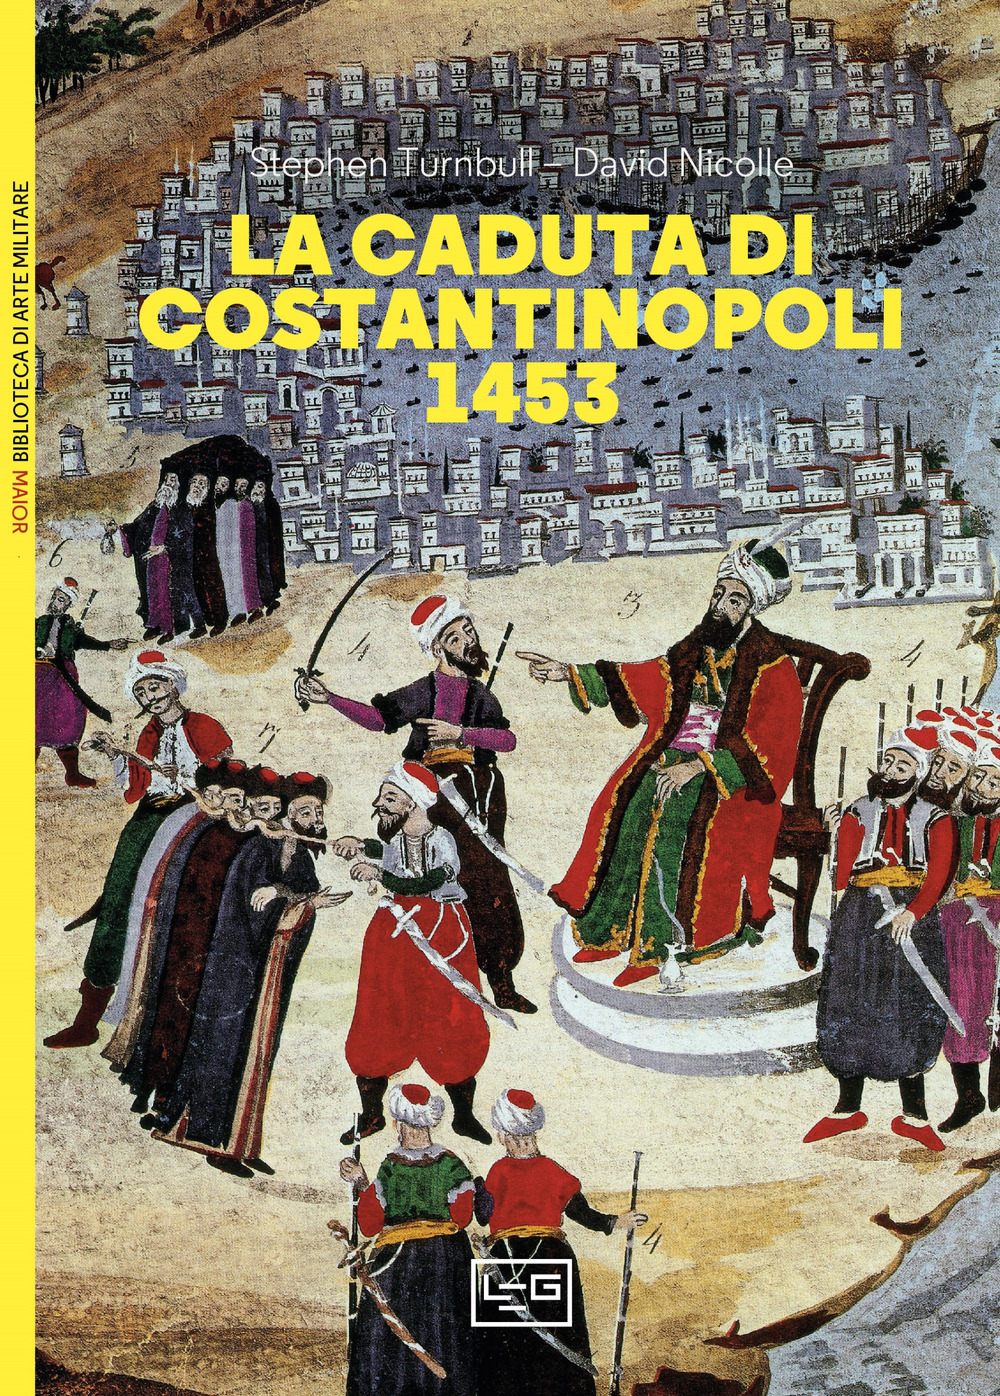 La caduta di Costantinopoli 1453